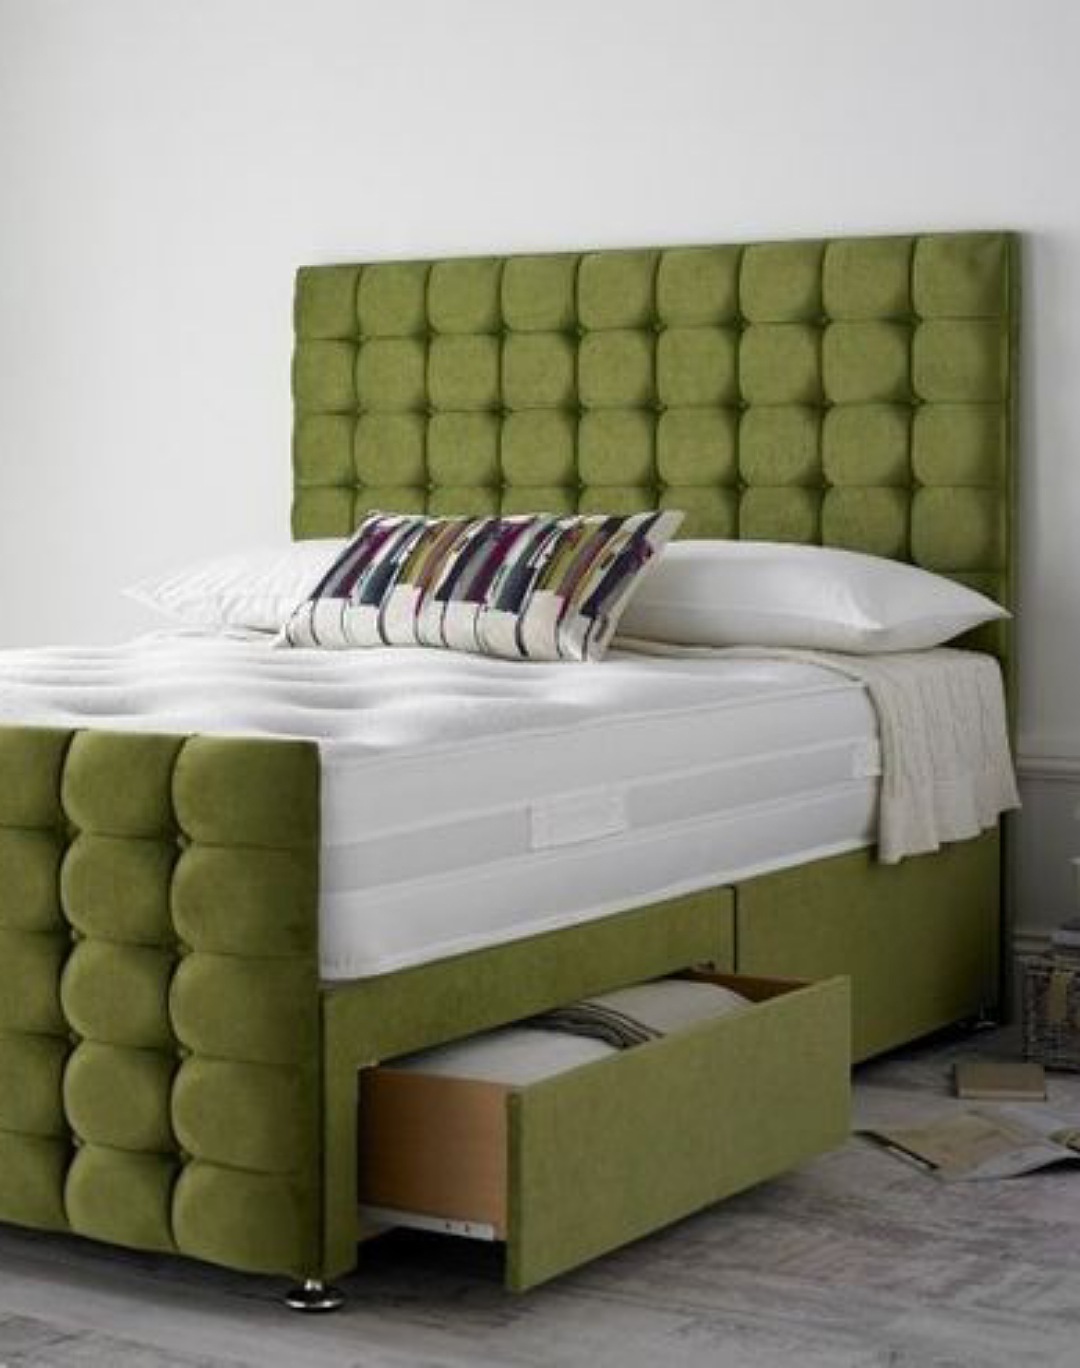 Upholstery Lemon Green Bed